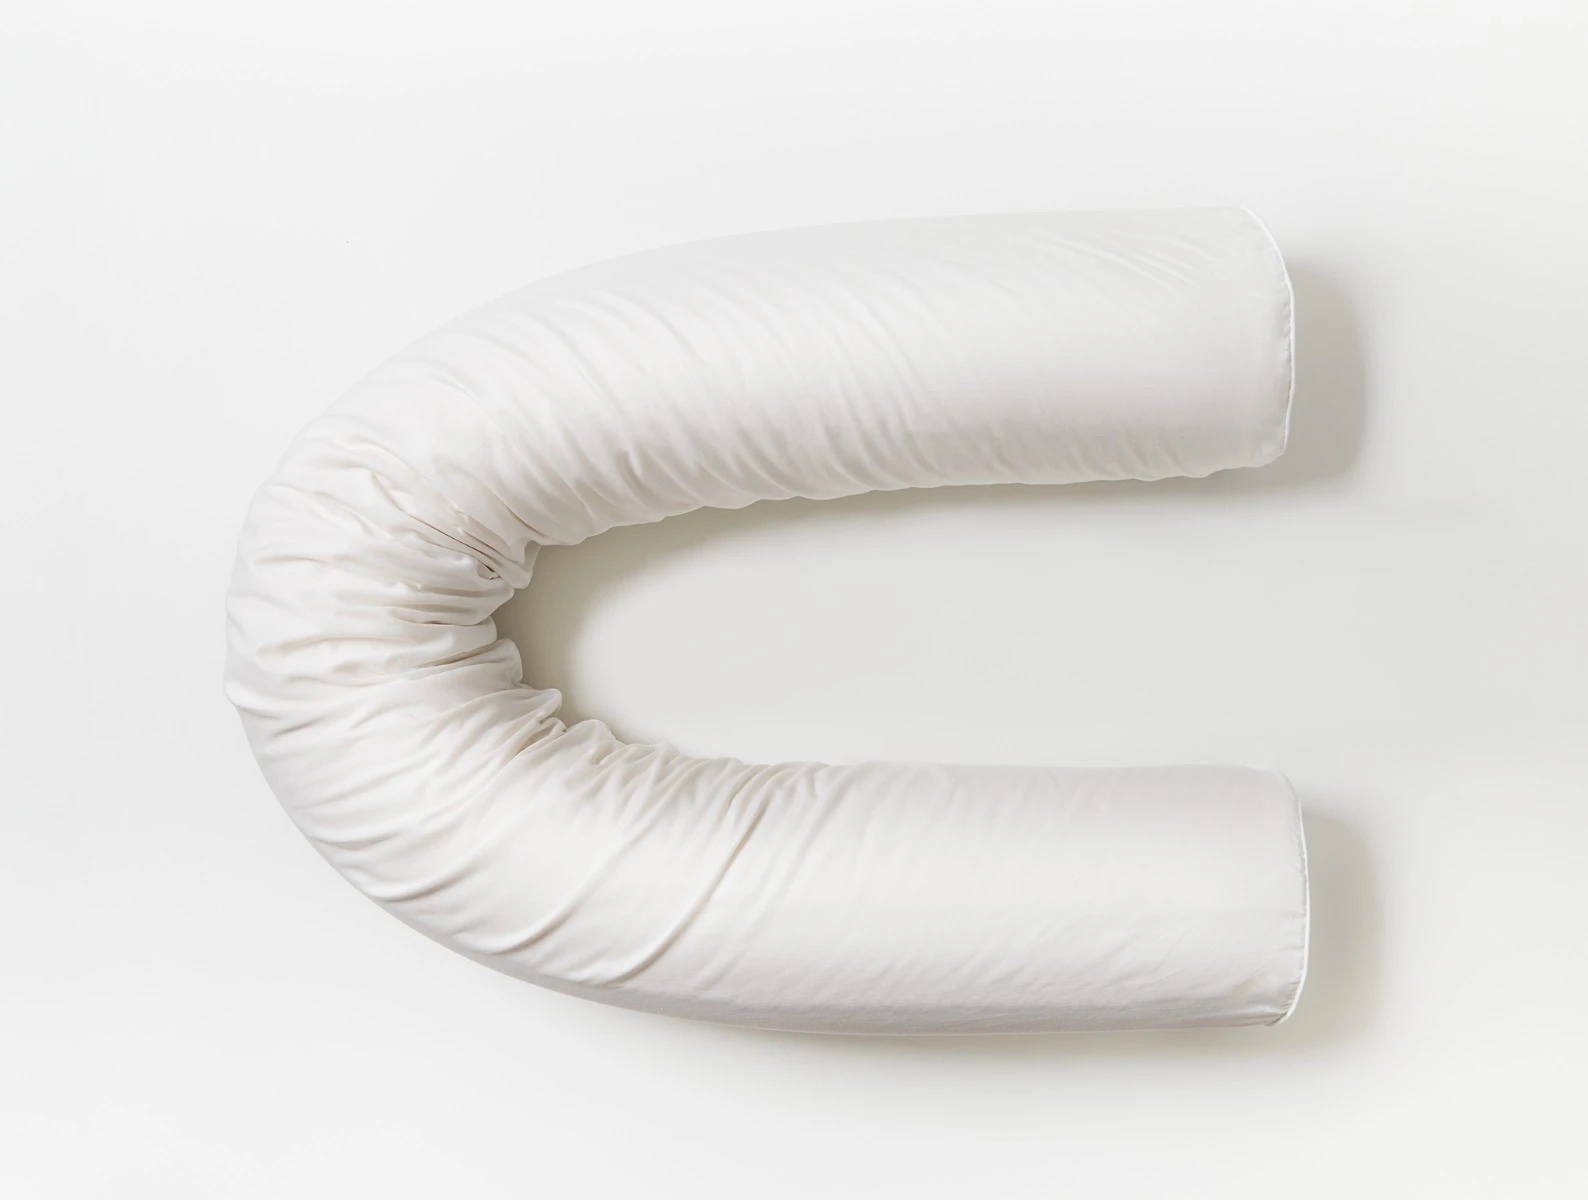 The Coyuchi body pillow in a U-shape.